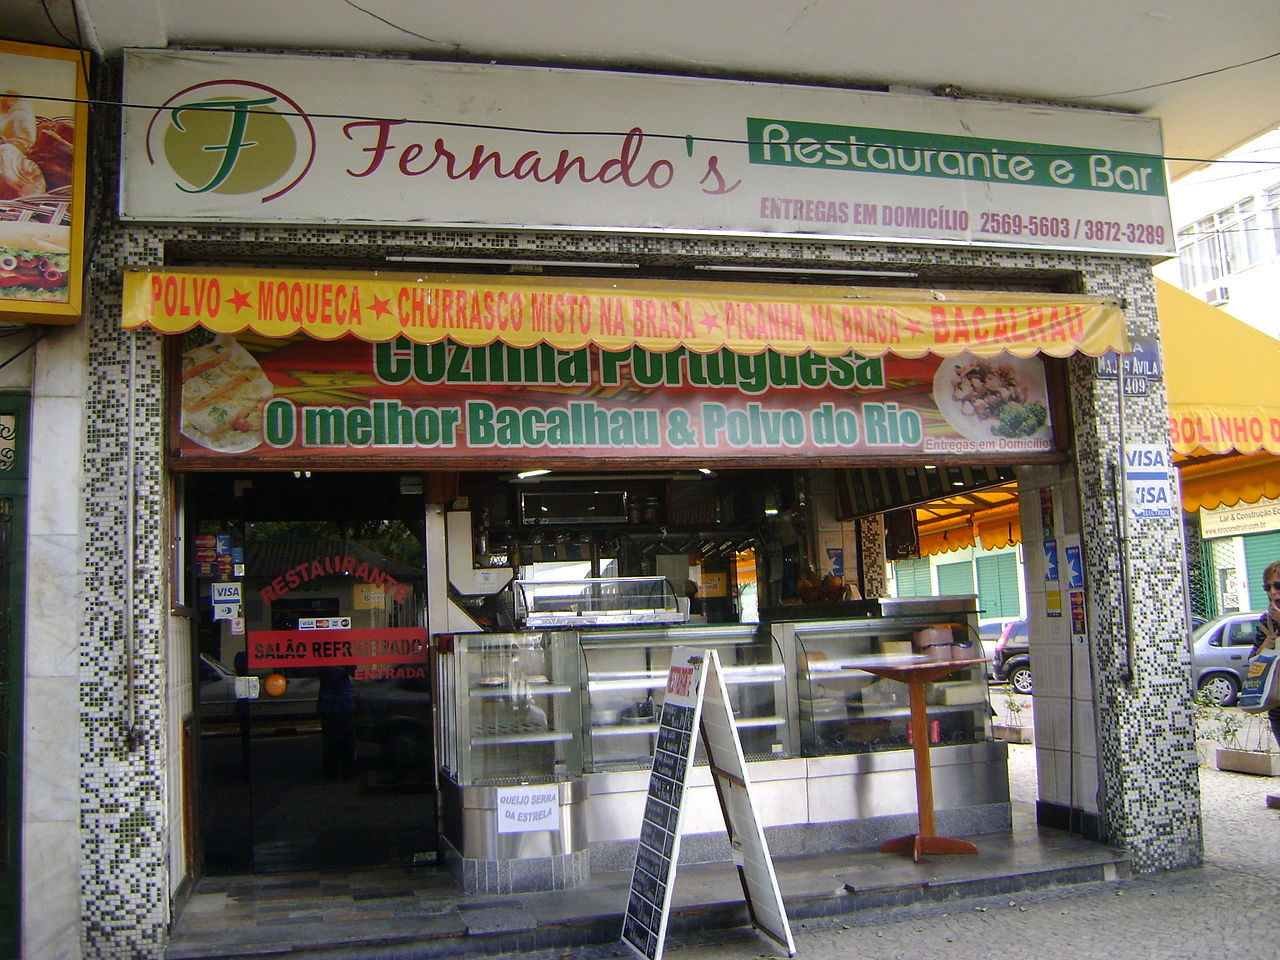 Restaurantes: Fernando's Restaurante